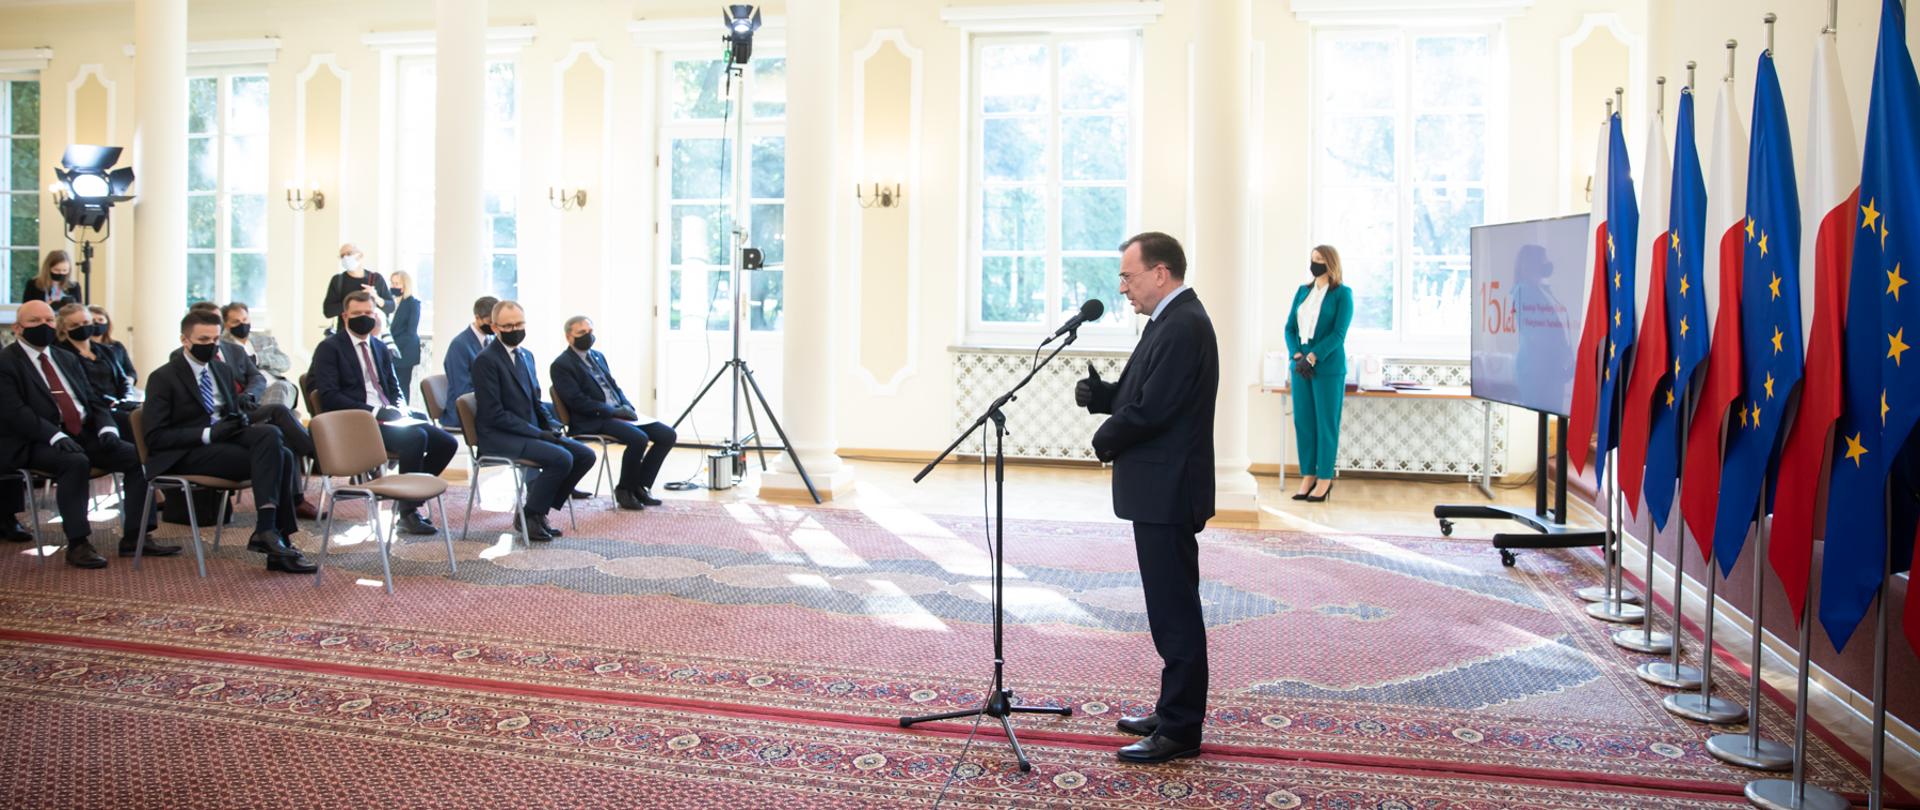 Minister Spraw Wewnętrznych i Administracji Mariusz Kamiński wygłasza przemówienie